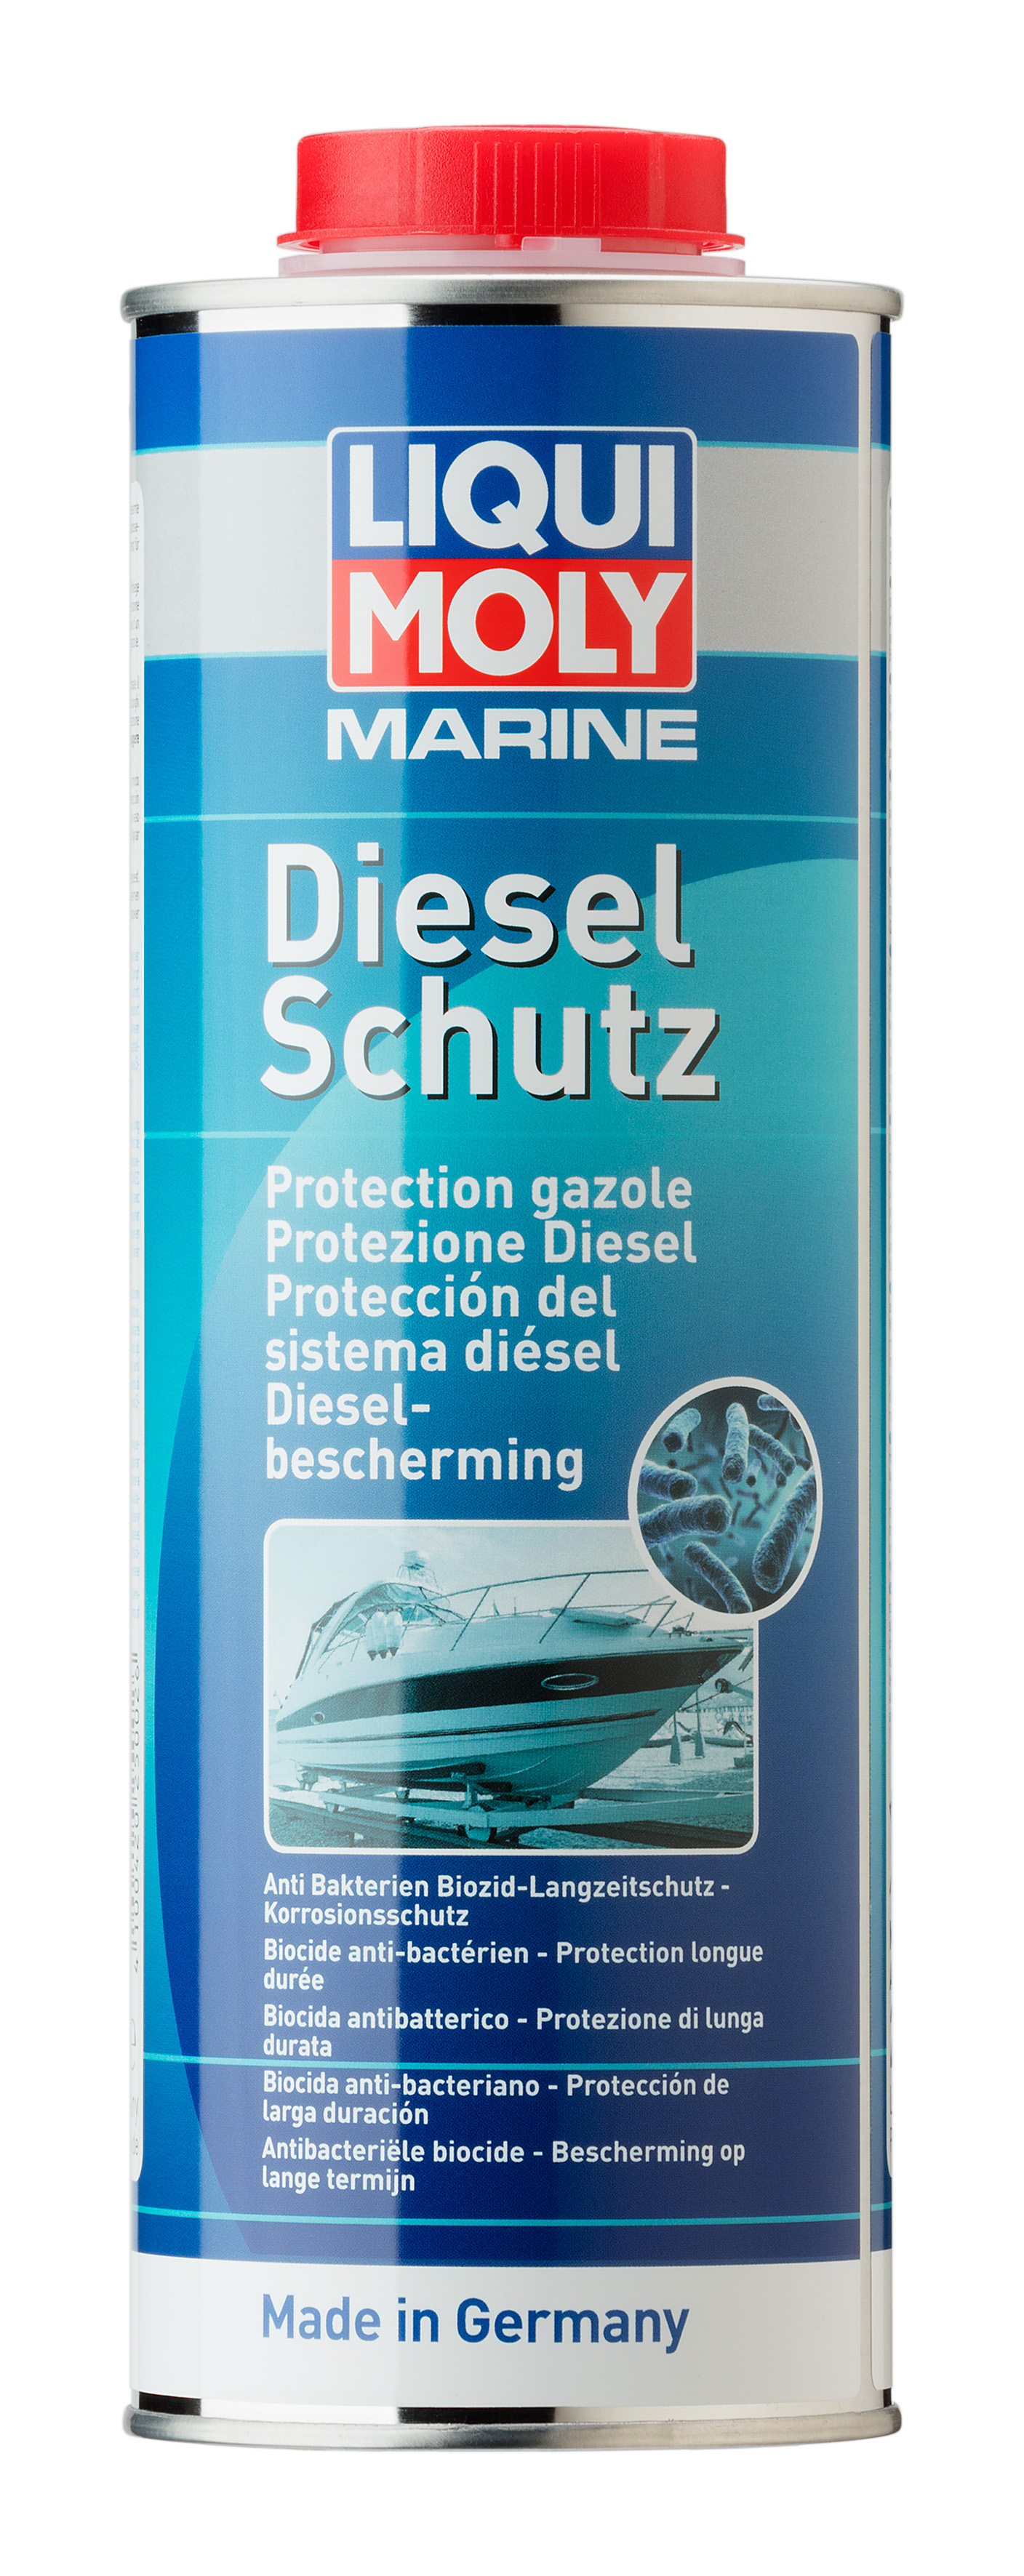 Liqui Moly Marine Diesel Schutz